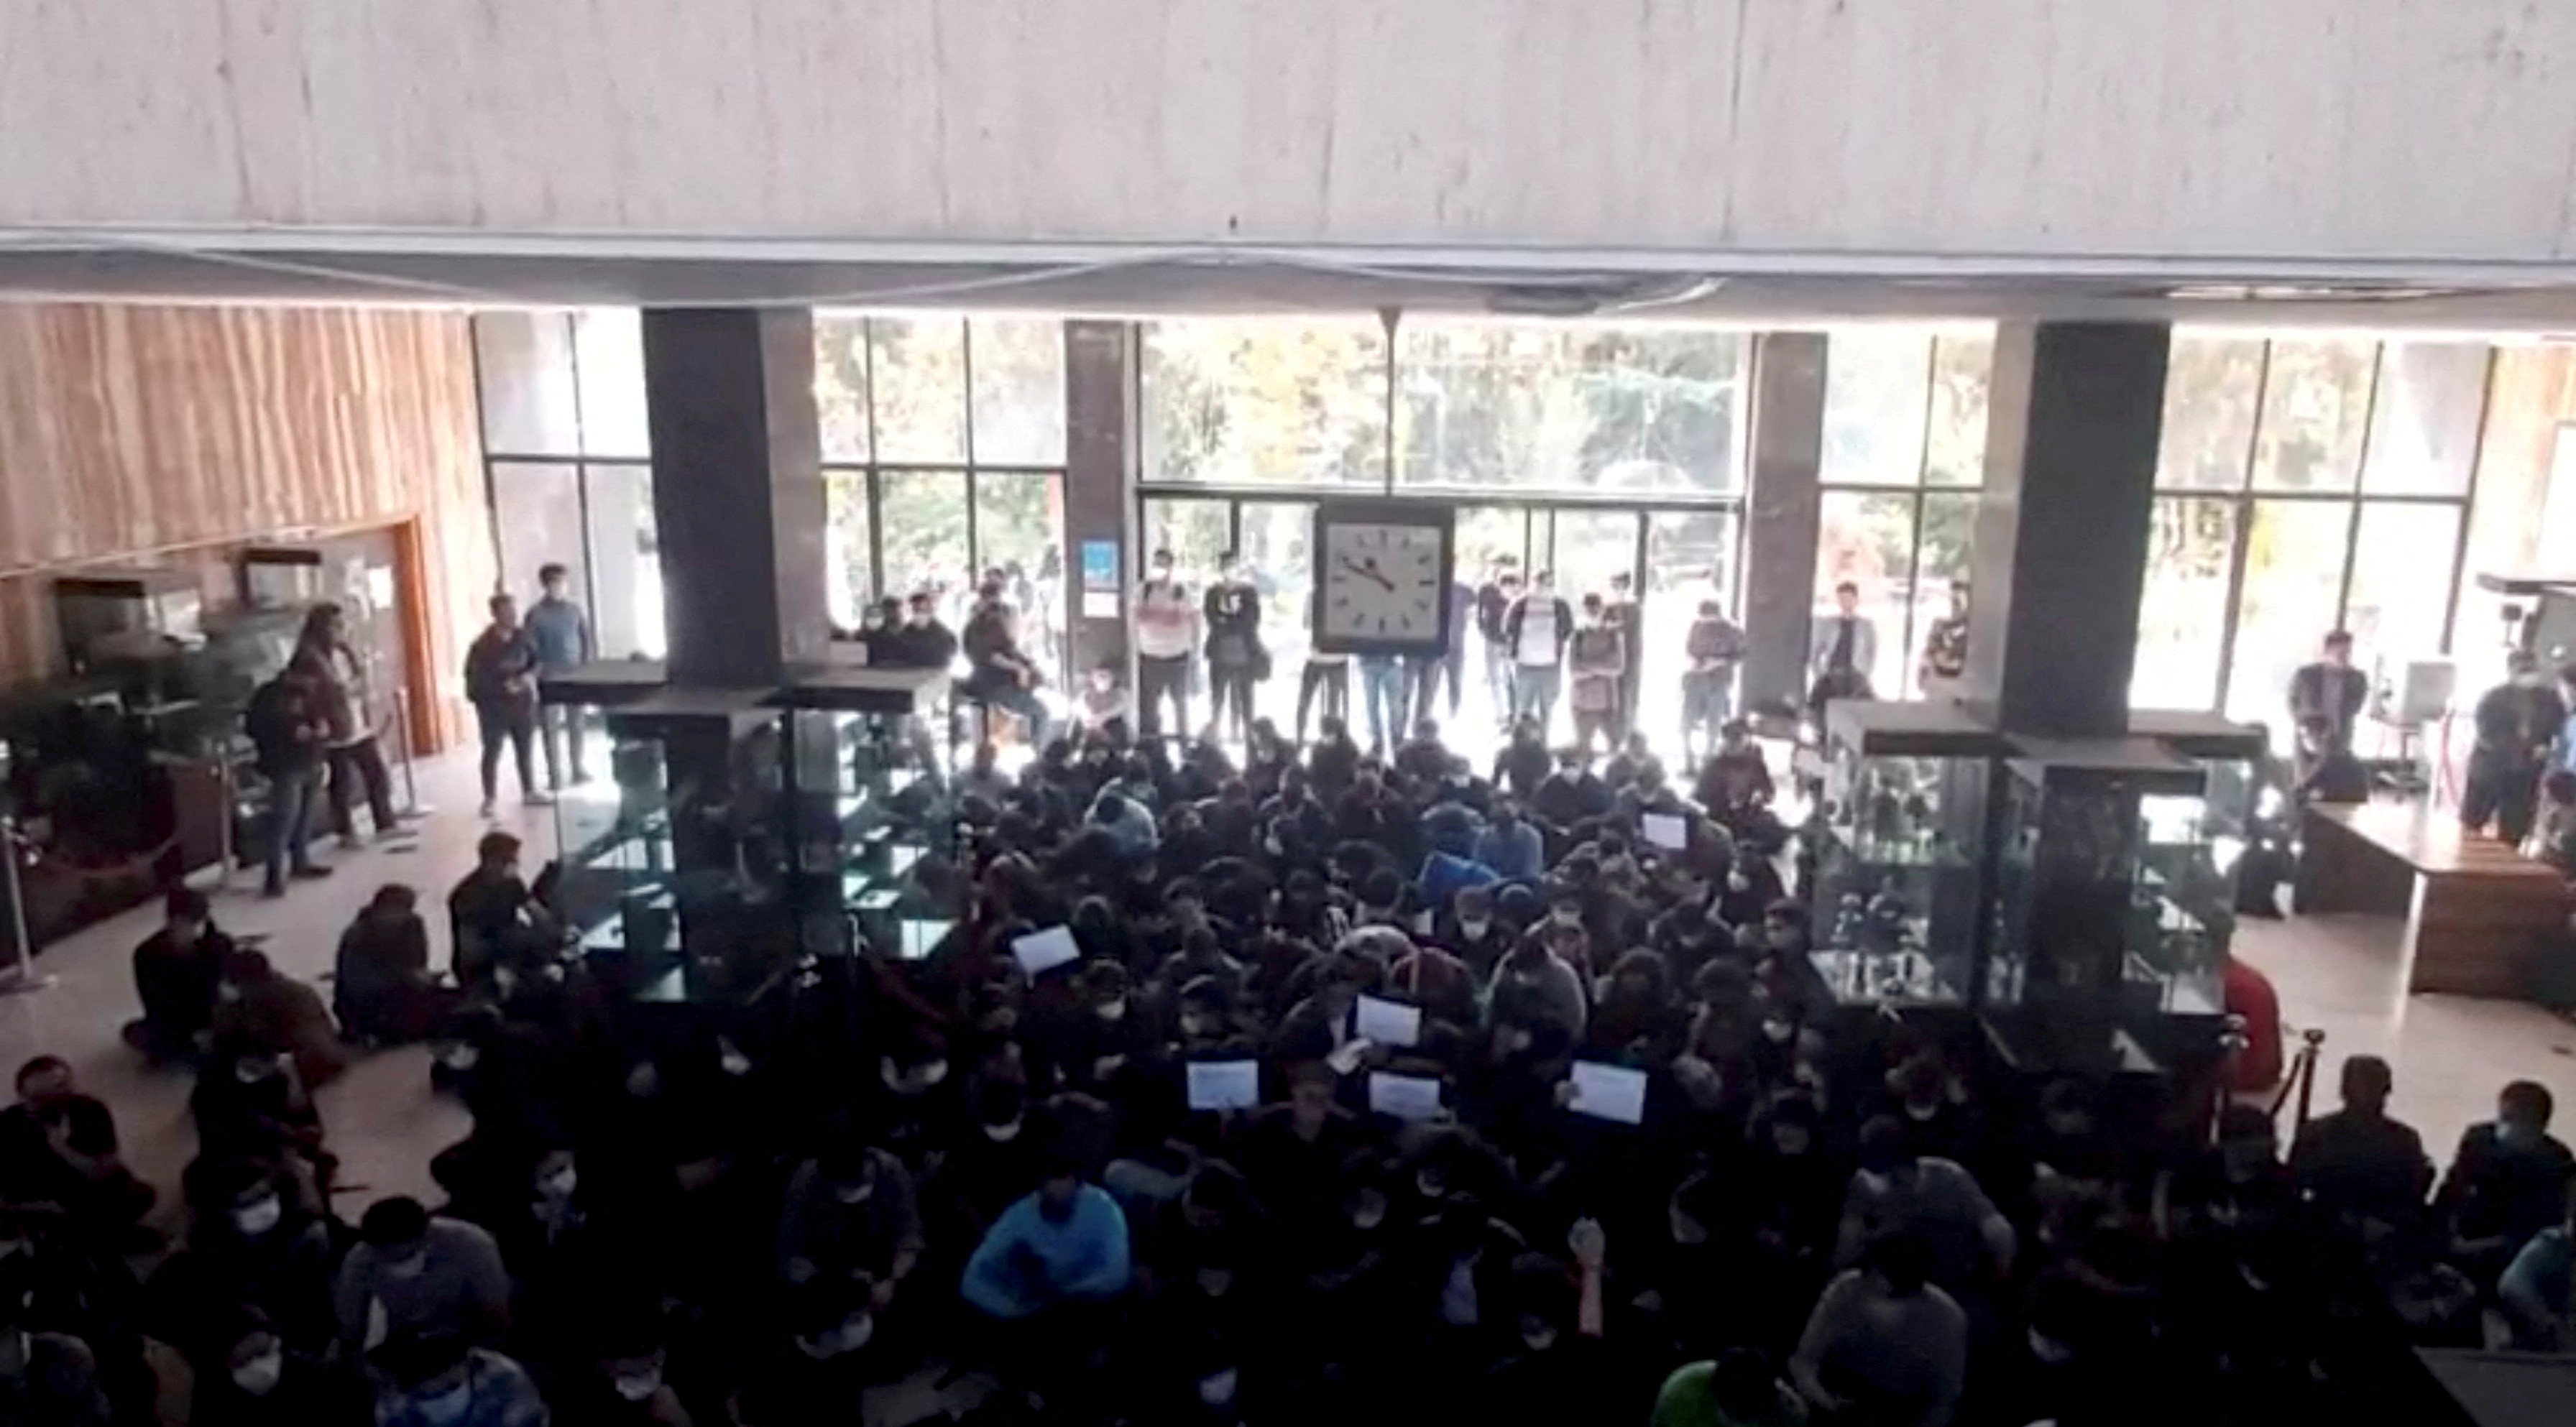 Los jóvenes se manifestaron en las universidades en oposición al régimen y la primera ejecución (REUTERS)